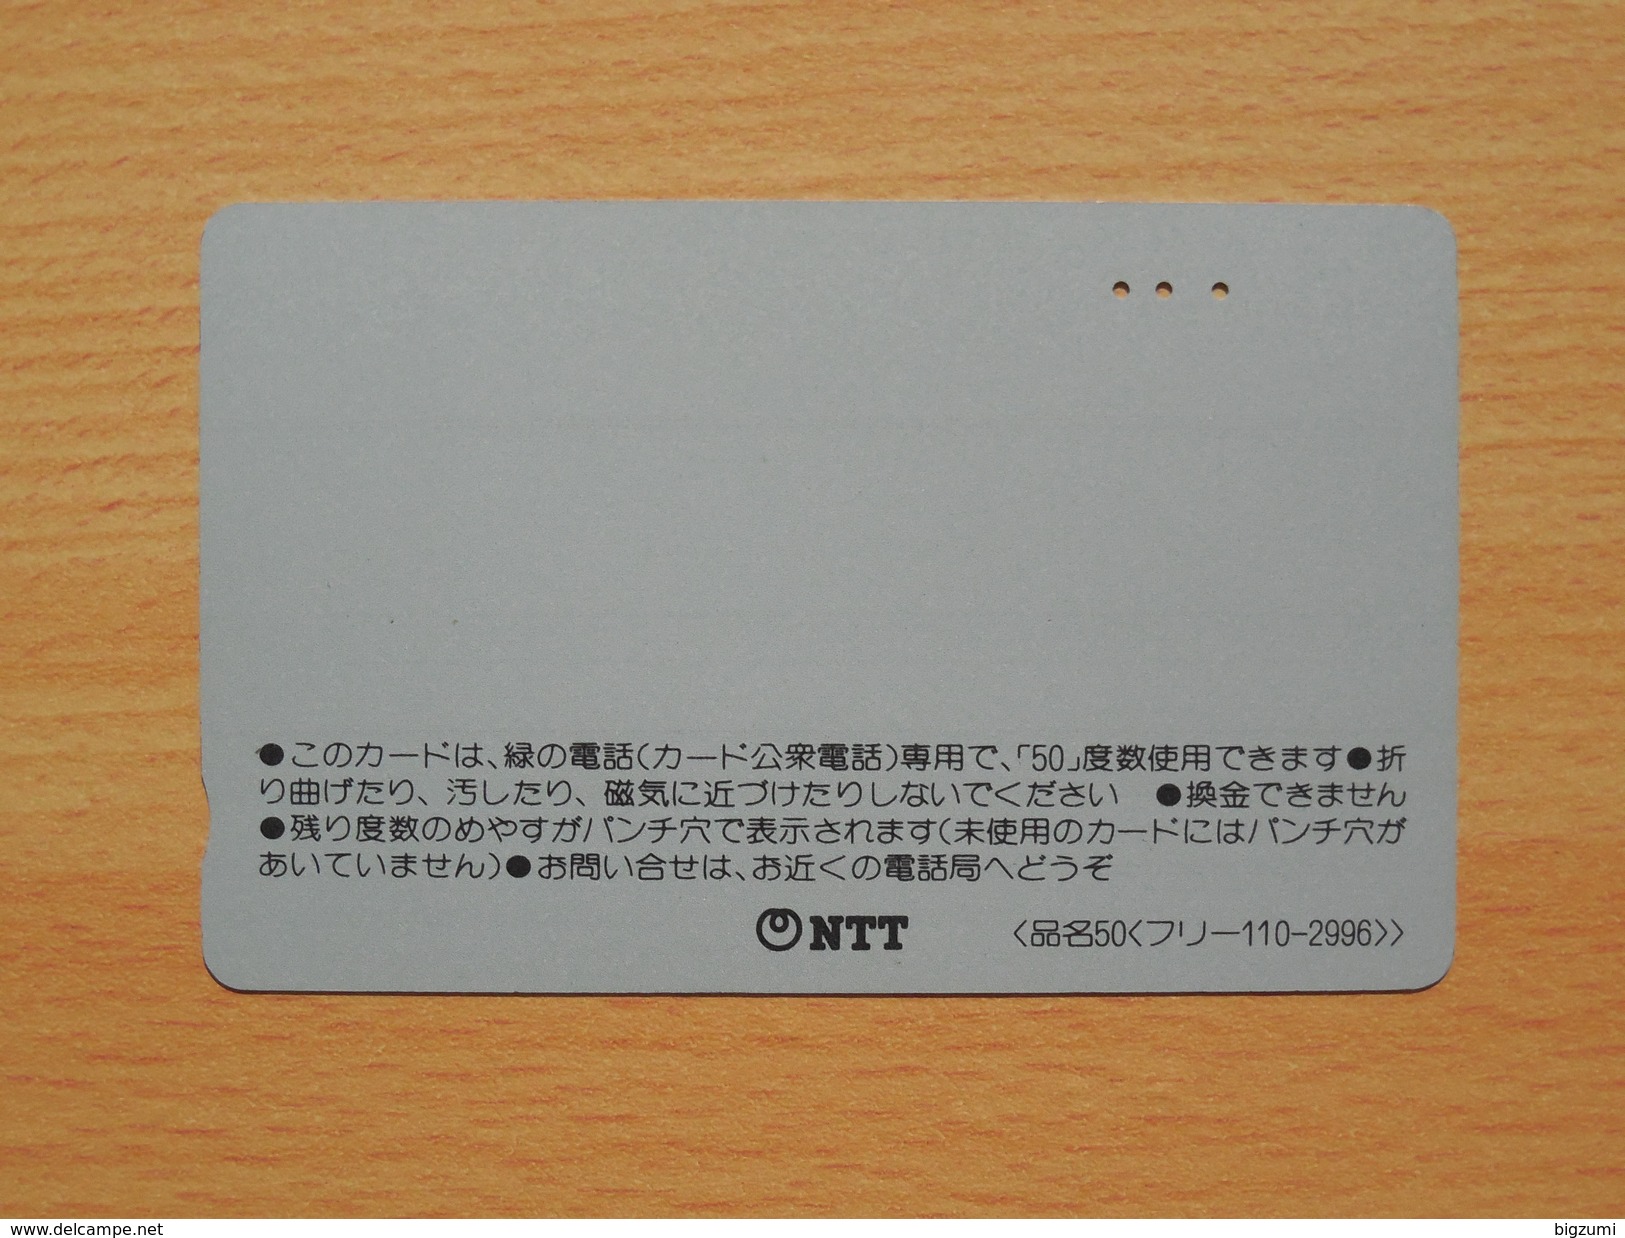 Japon Japan Free Front Bar, Balken Phonecard - 110-2996 / Eulen, Owl, Hibou - Eulenvögel